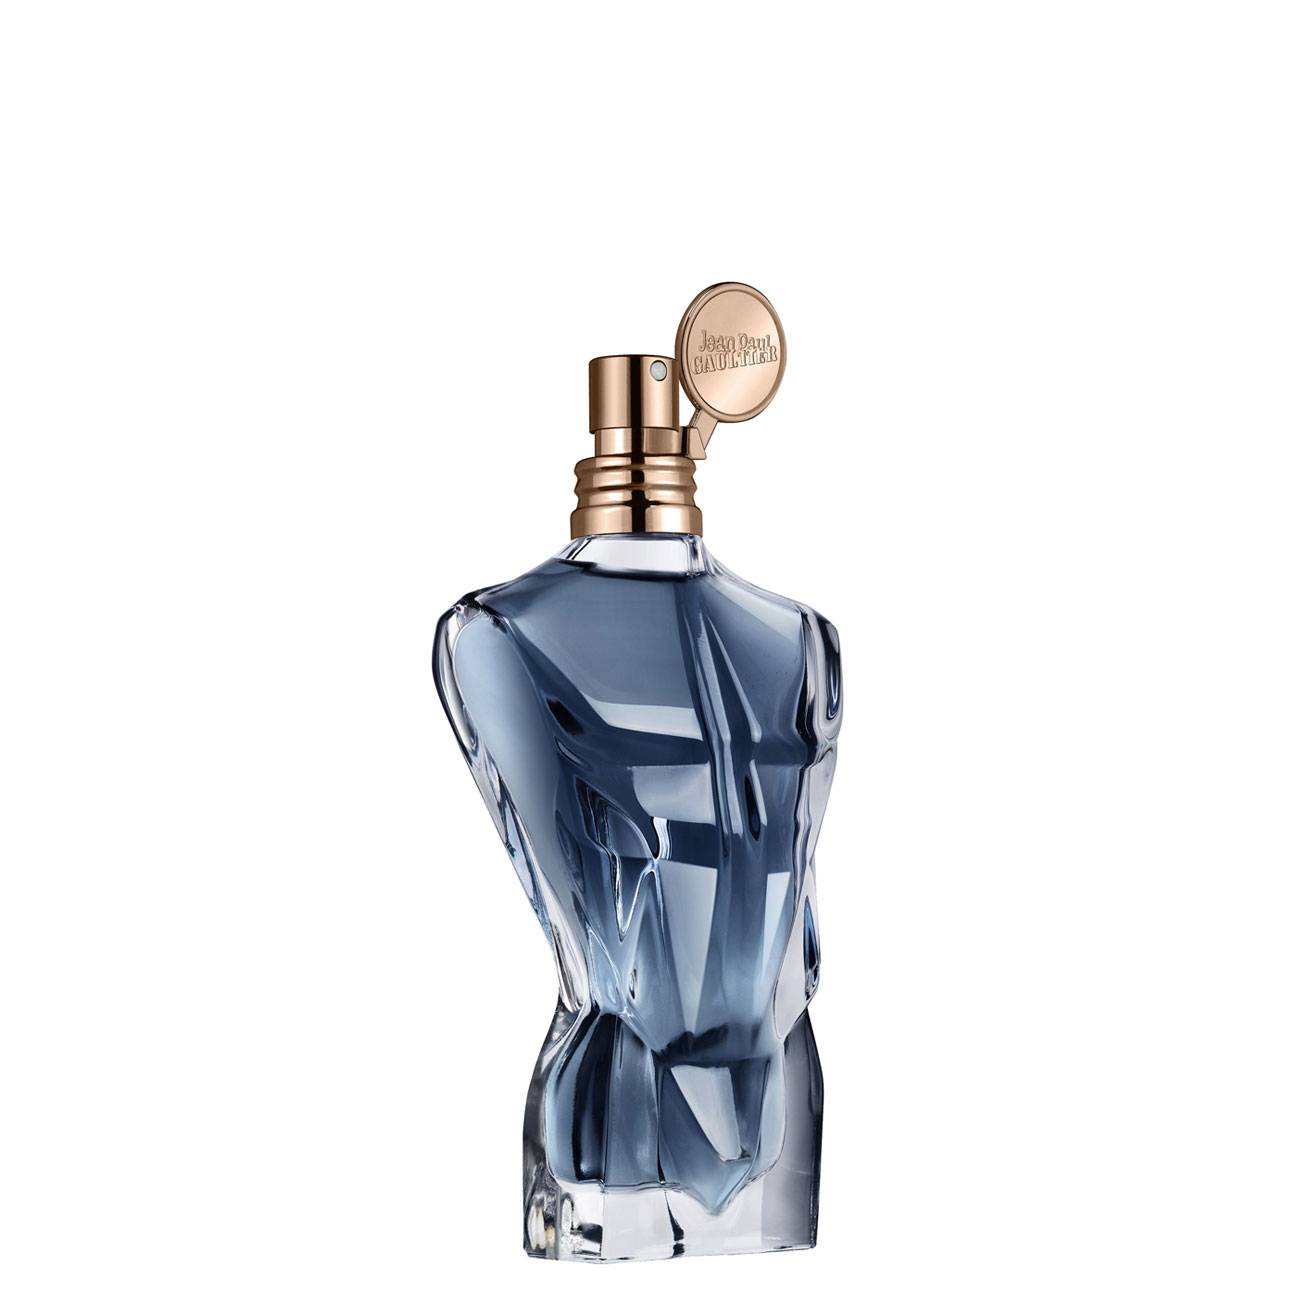 Apa de Parfum Jean Paul Gaultier LE MALE ESSENCE 75ml cu comanda online